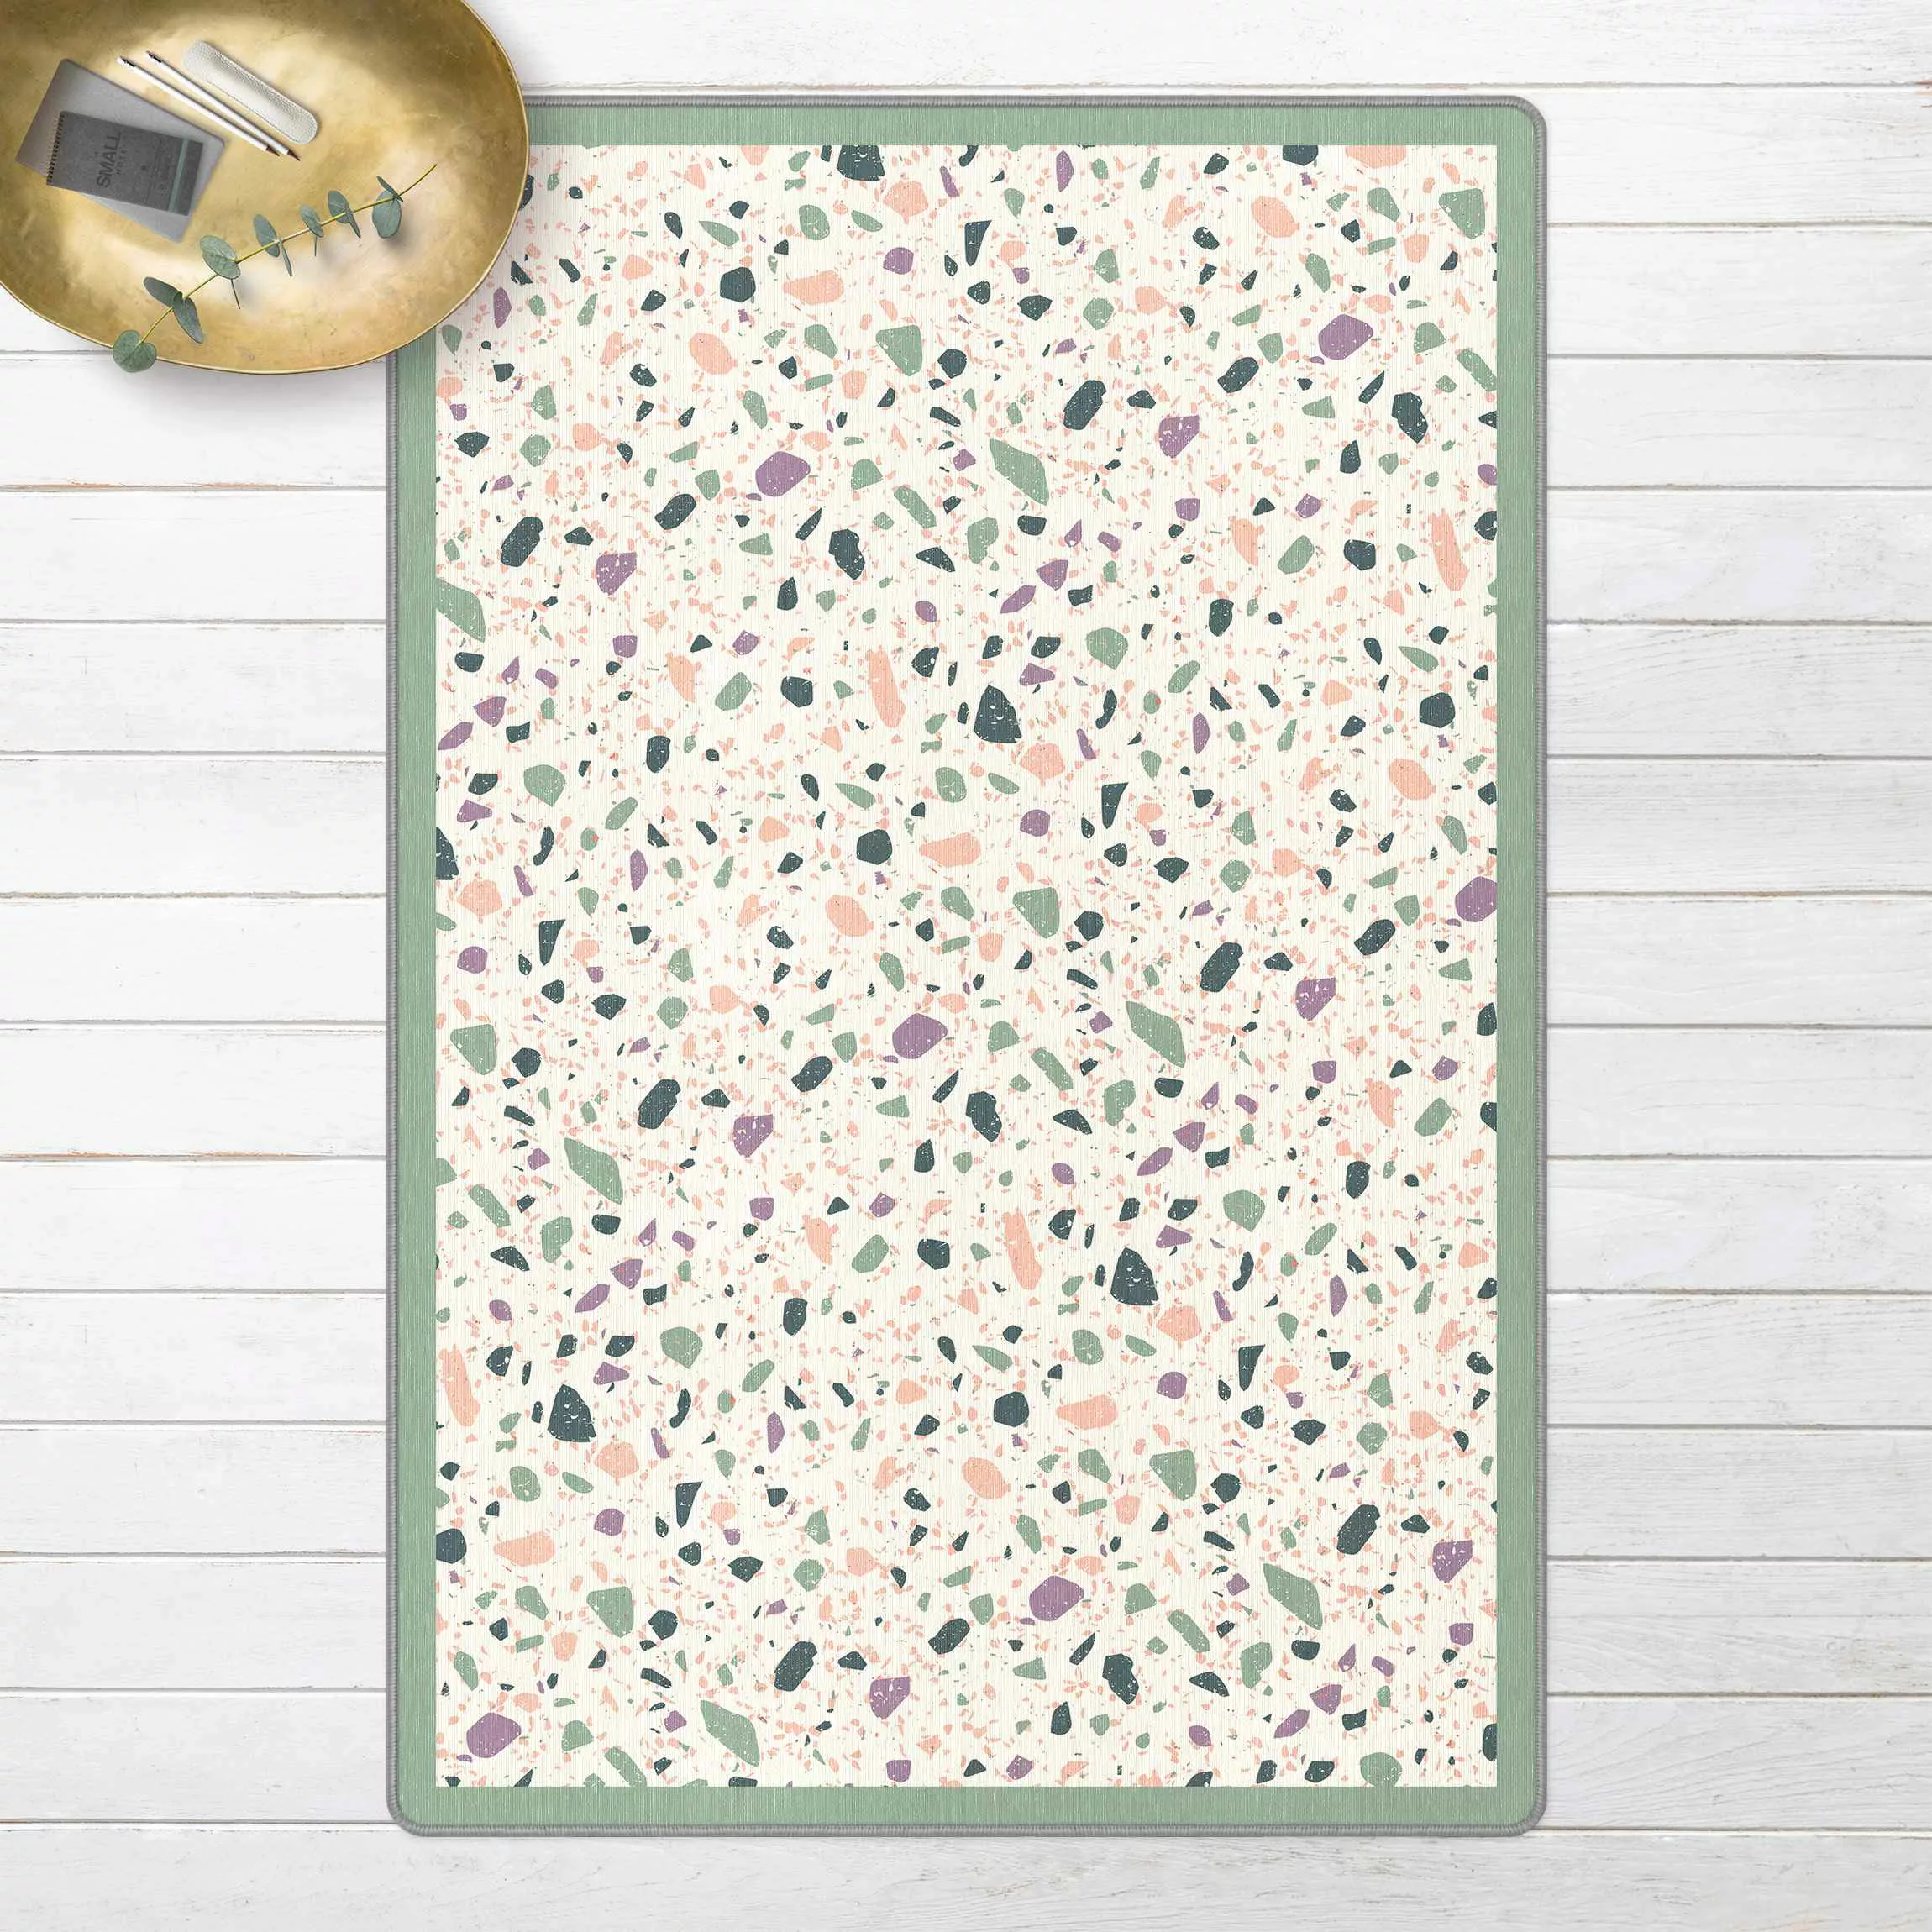 Teppich Detailliertes Terrazzo Muster Agrigento mit Rahmen günstig online kaufen